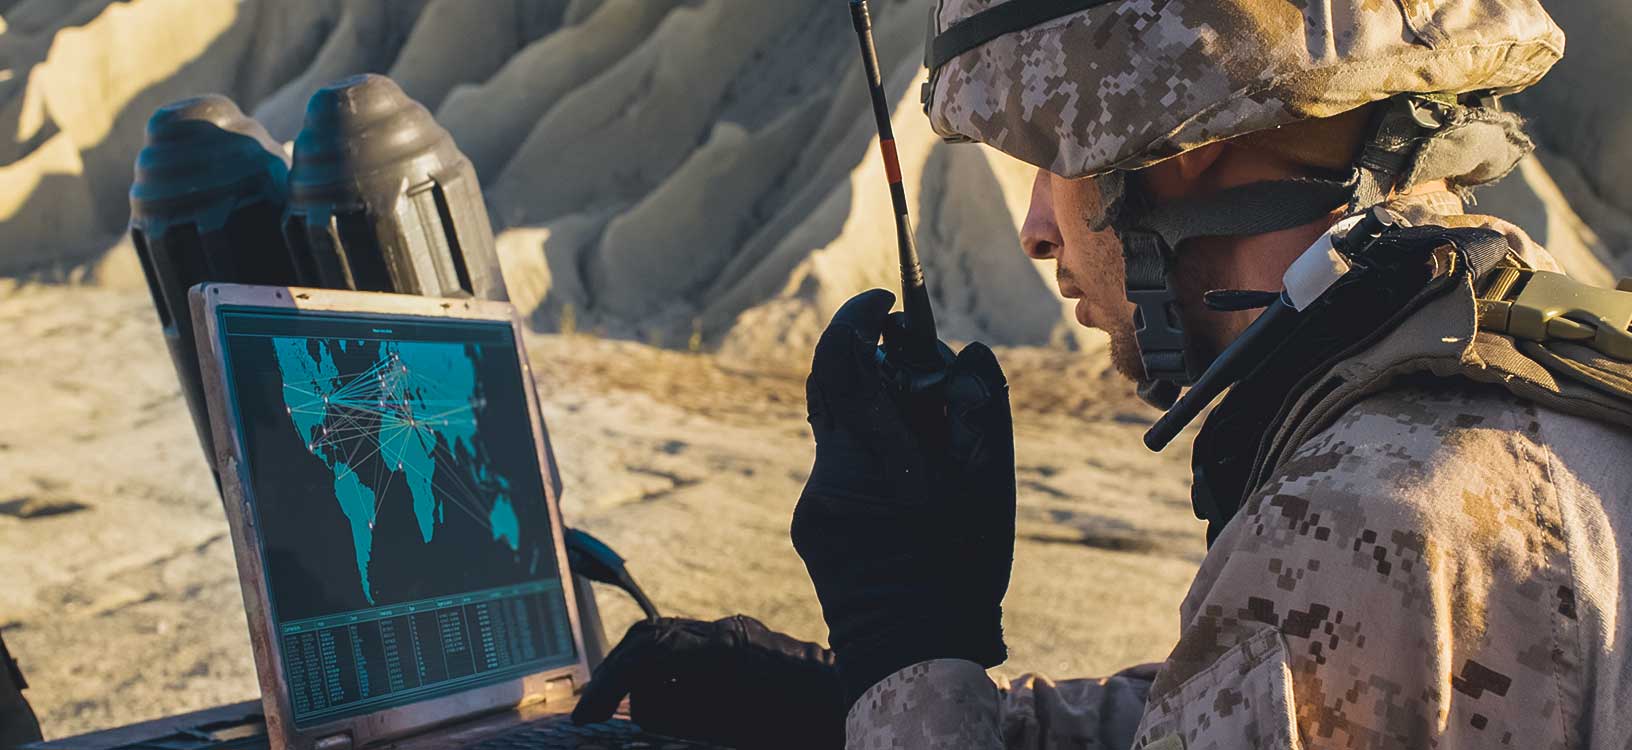 Um soldado está usando um notebook e rádio para se comunicar durante um operação militar no deserto